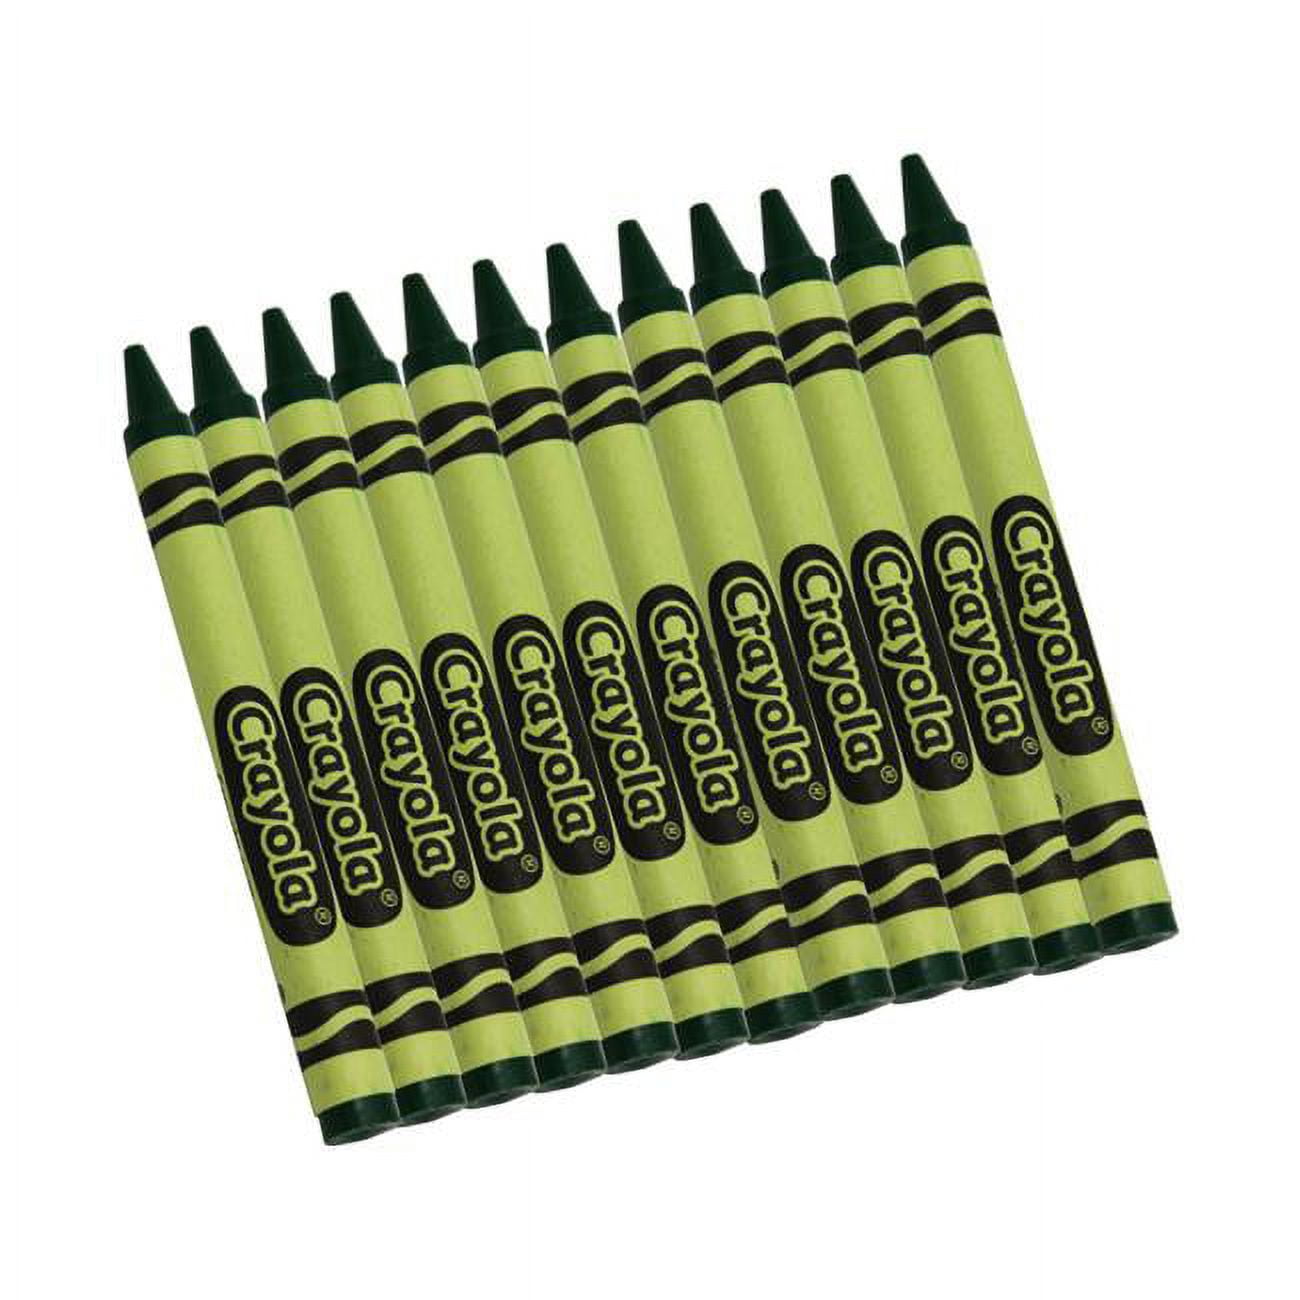 Crayola Bulk Crayons, Yellow, 12/Box (520836034)